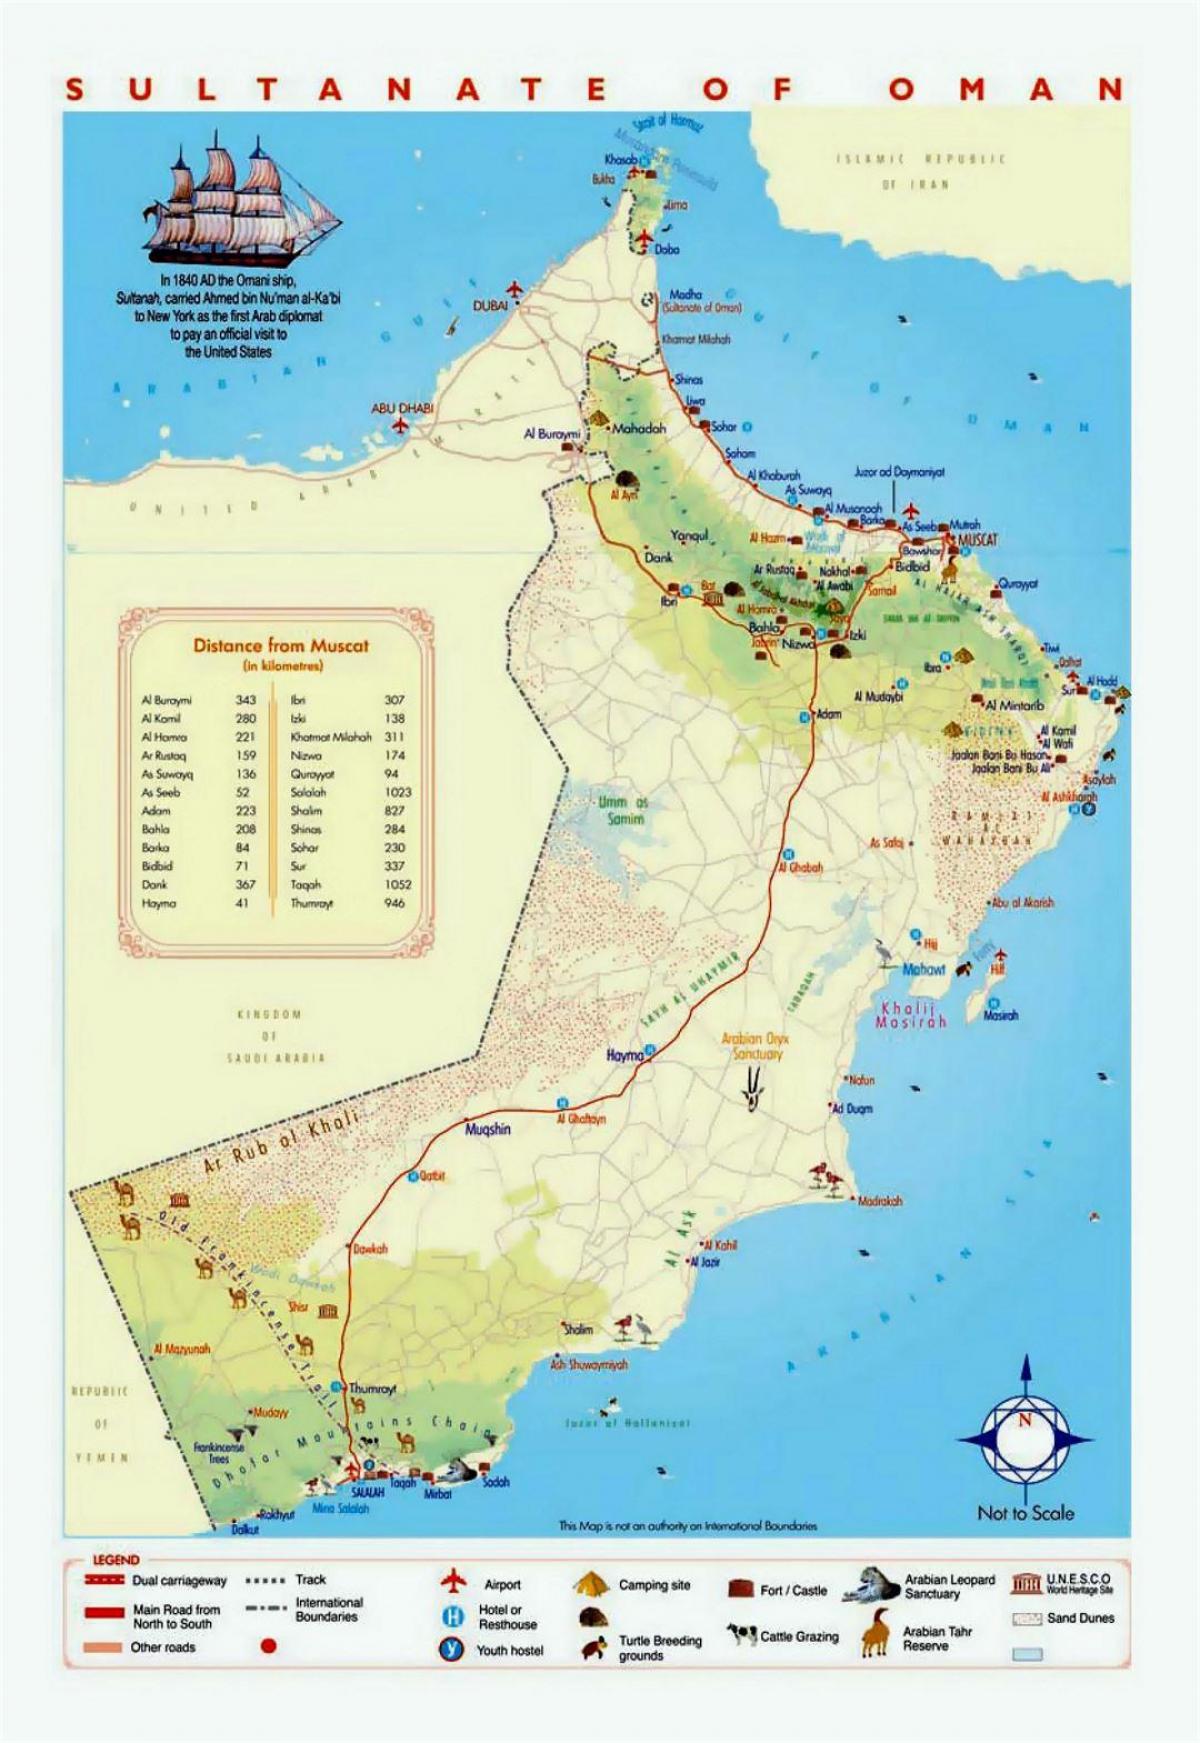 Omanas lankytinų vietų žemėlapis